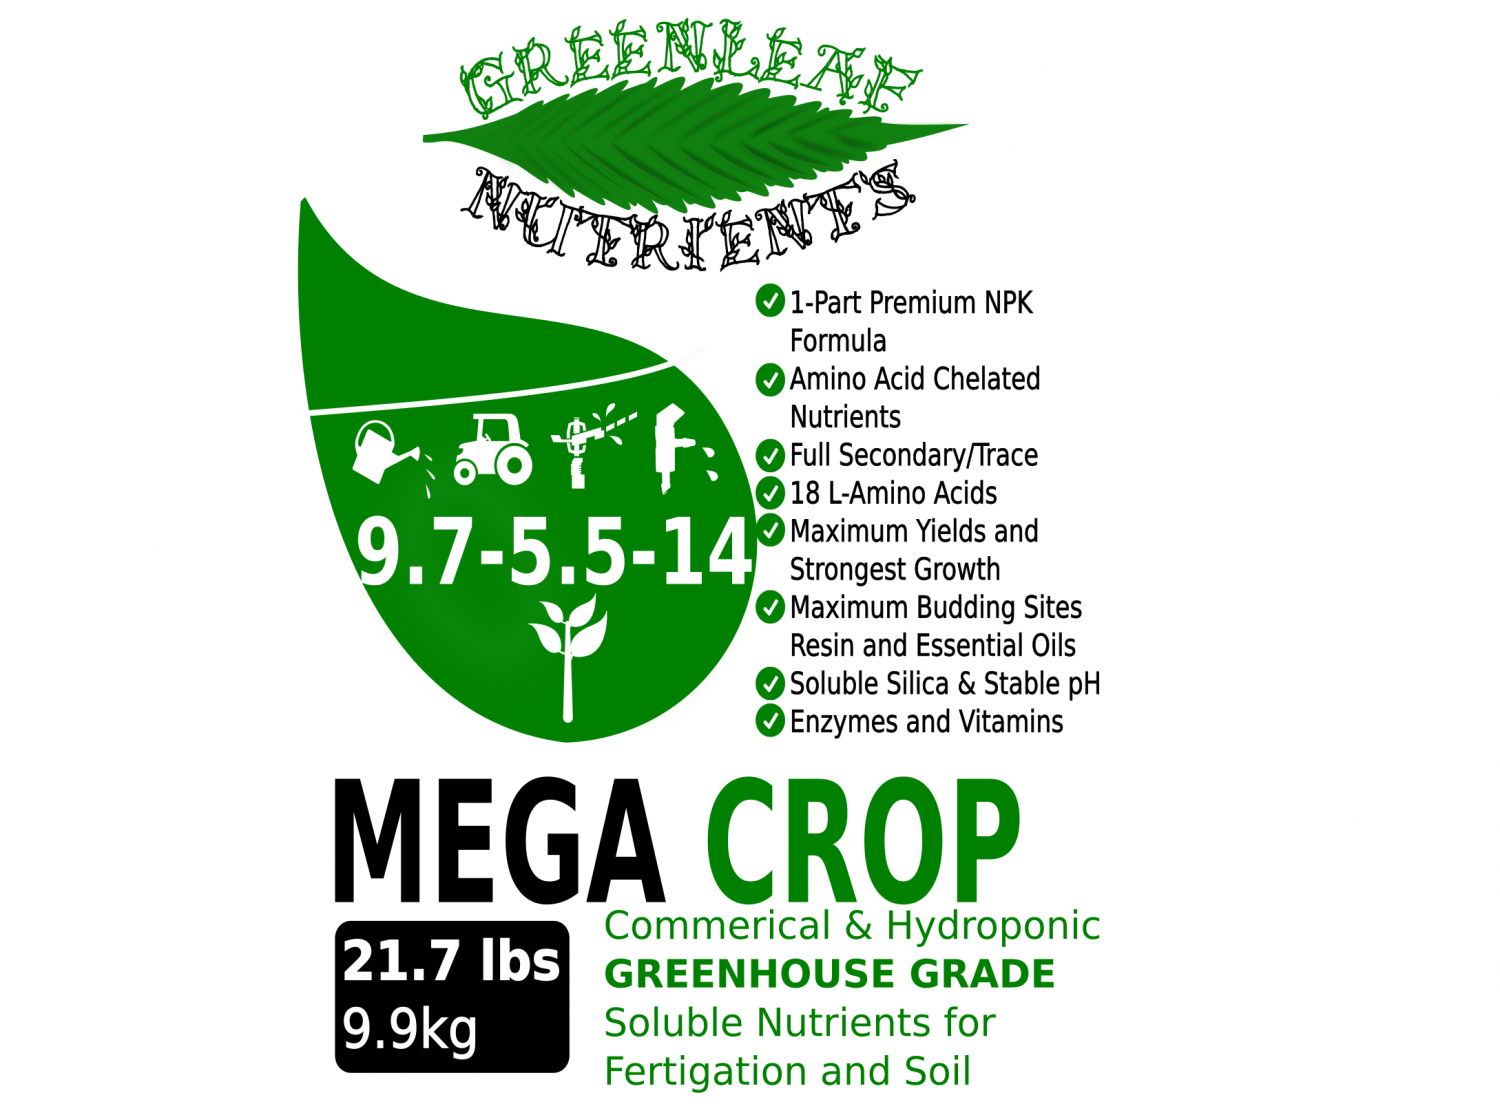 MEGA CROP by Greenleaf Nutrients